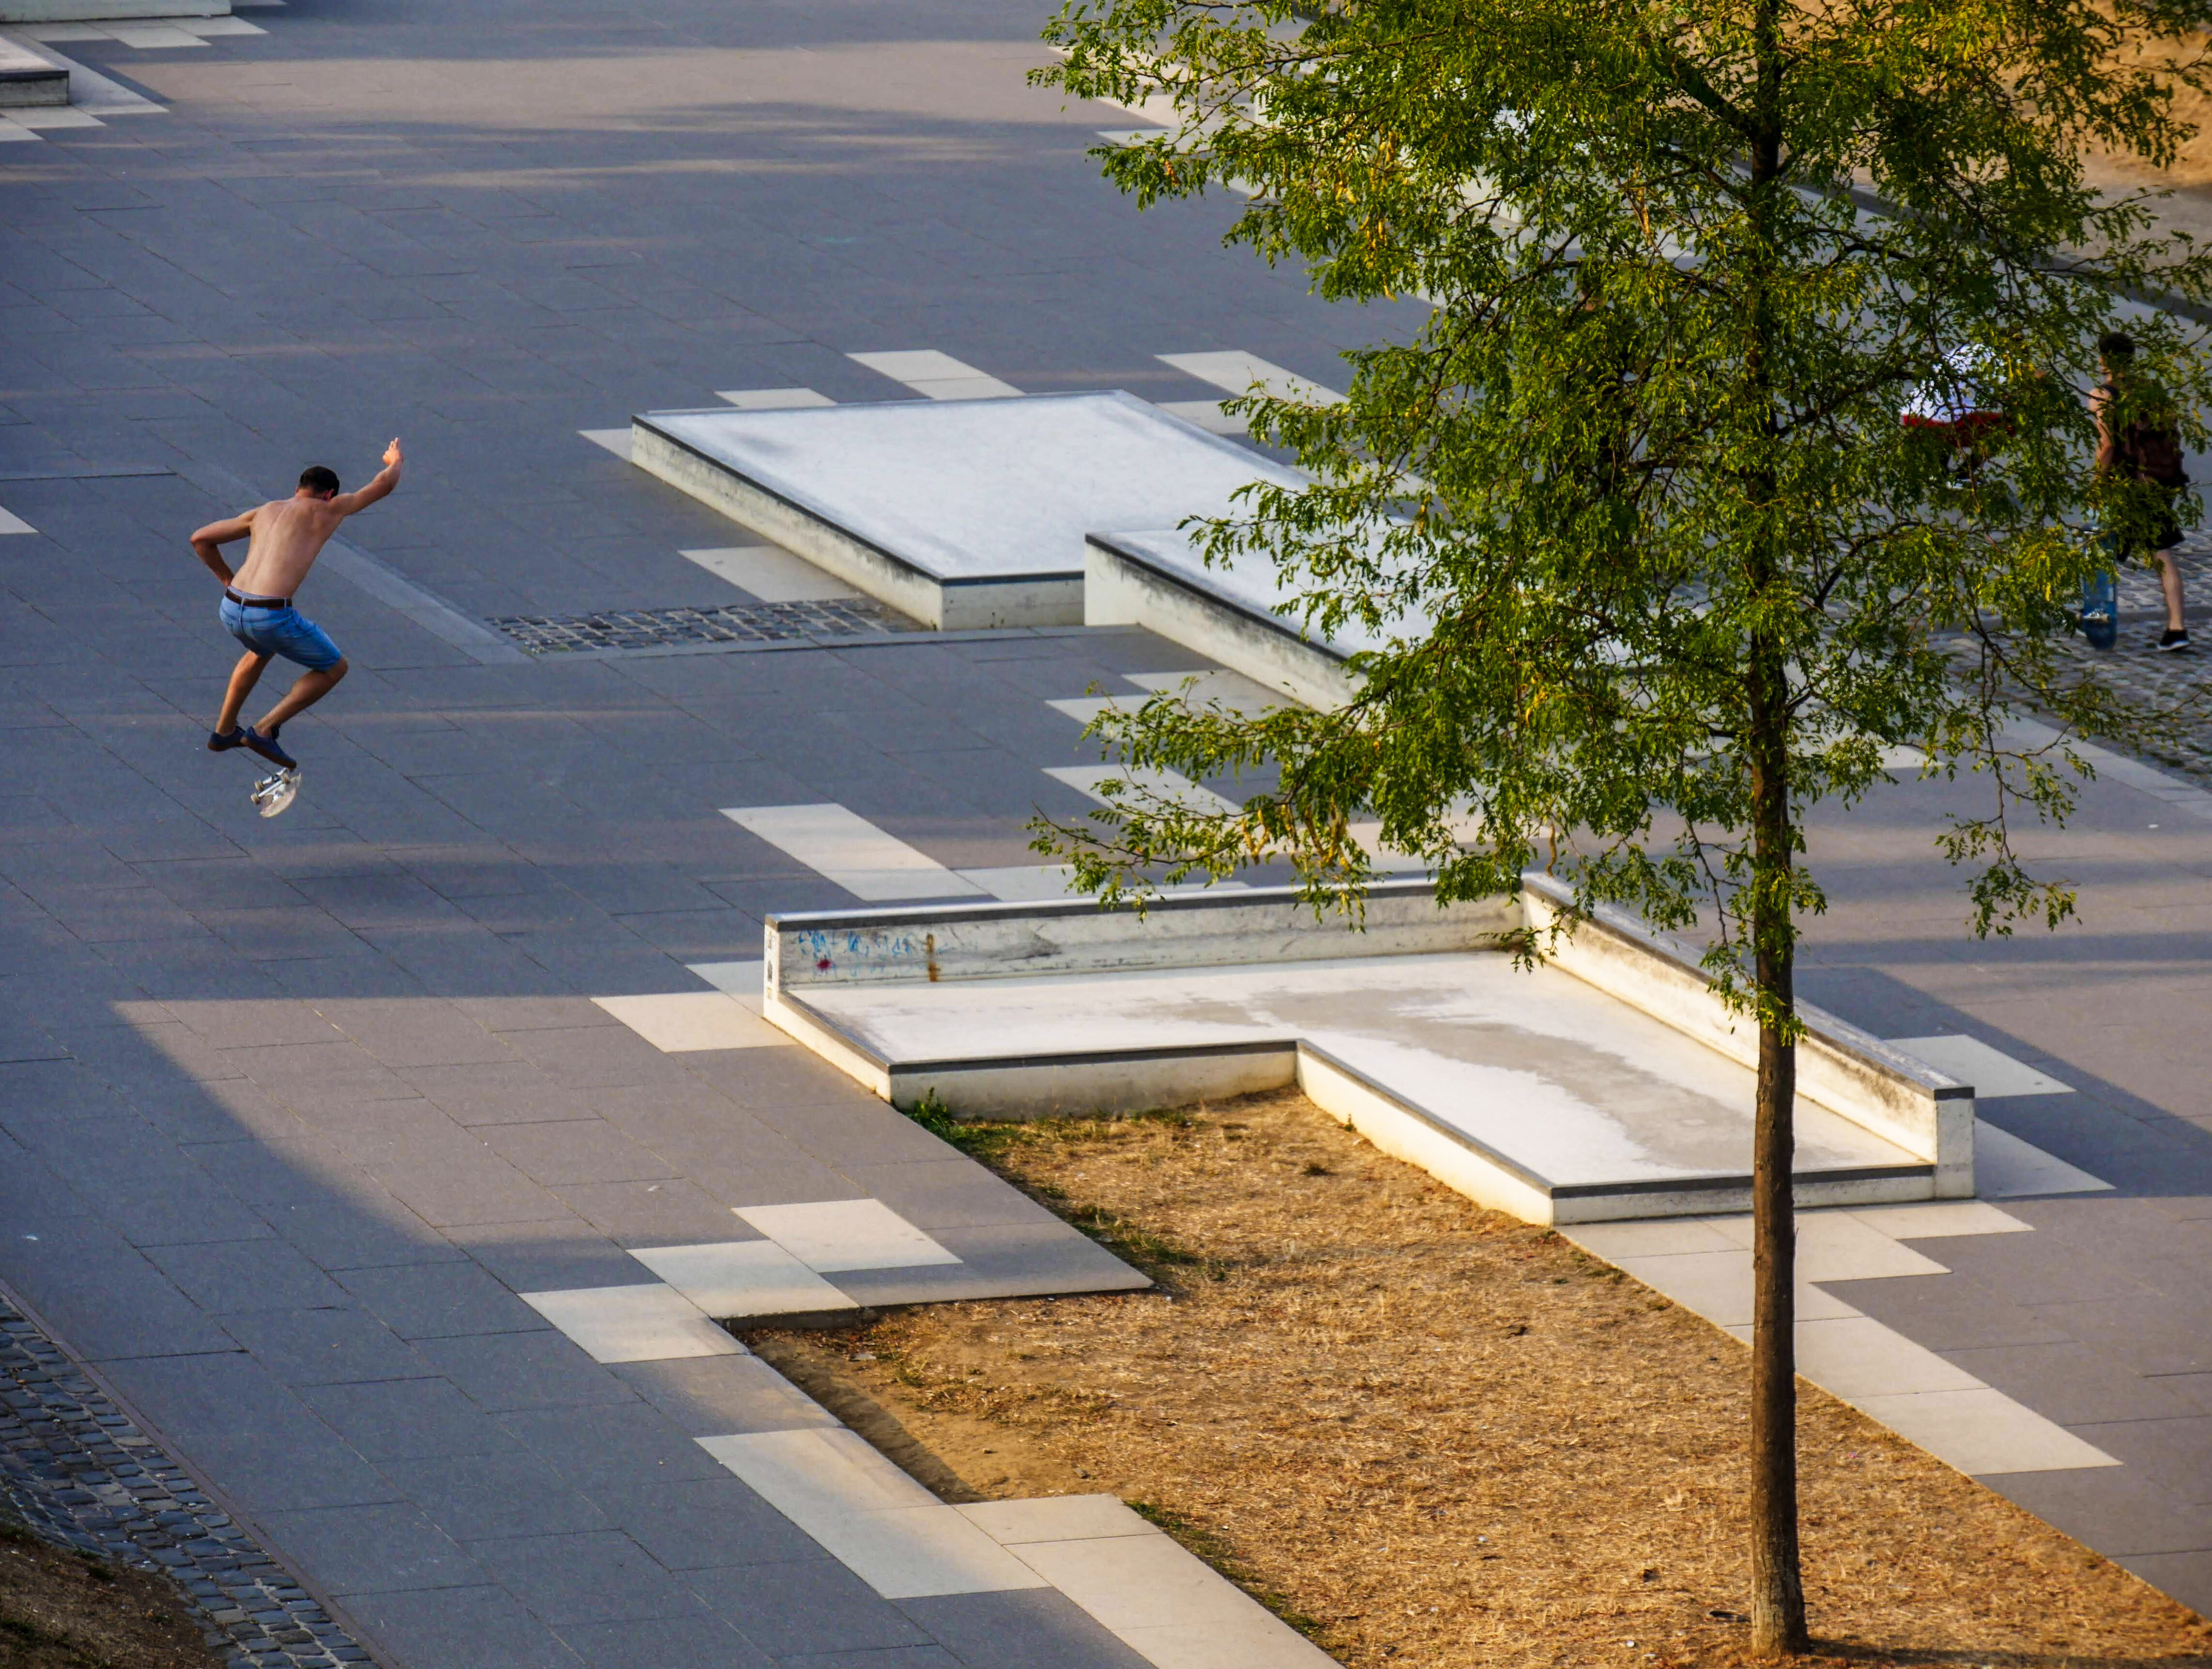 Skateboarder springt in die Luft und dreht sein Skateboard 